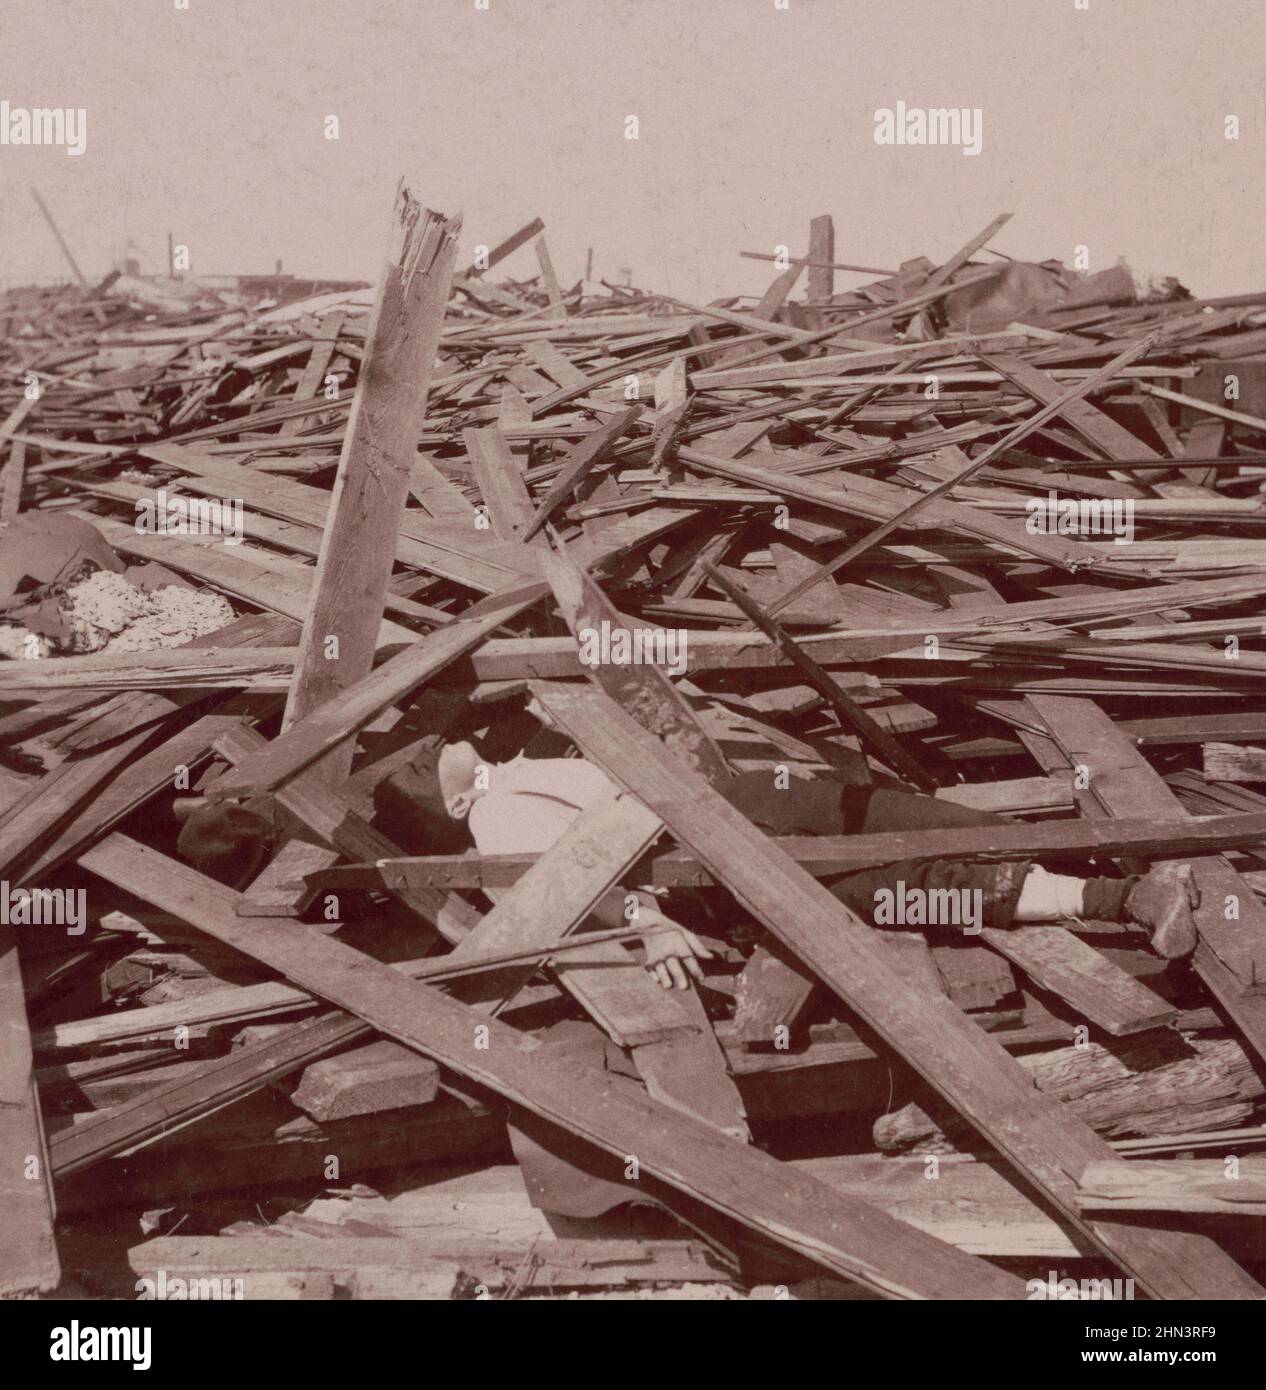 Foto vintage de Galveston Disaster, un hombre muerto bajo una vasta pila de tablones de madera después del huracán Galveston de 1900. EE.UU Foto de stock